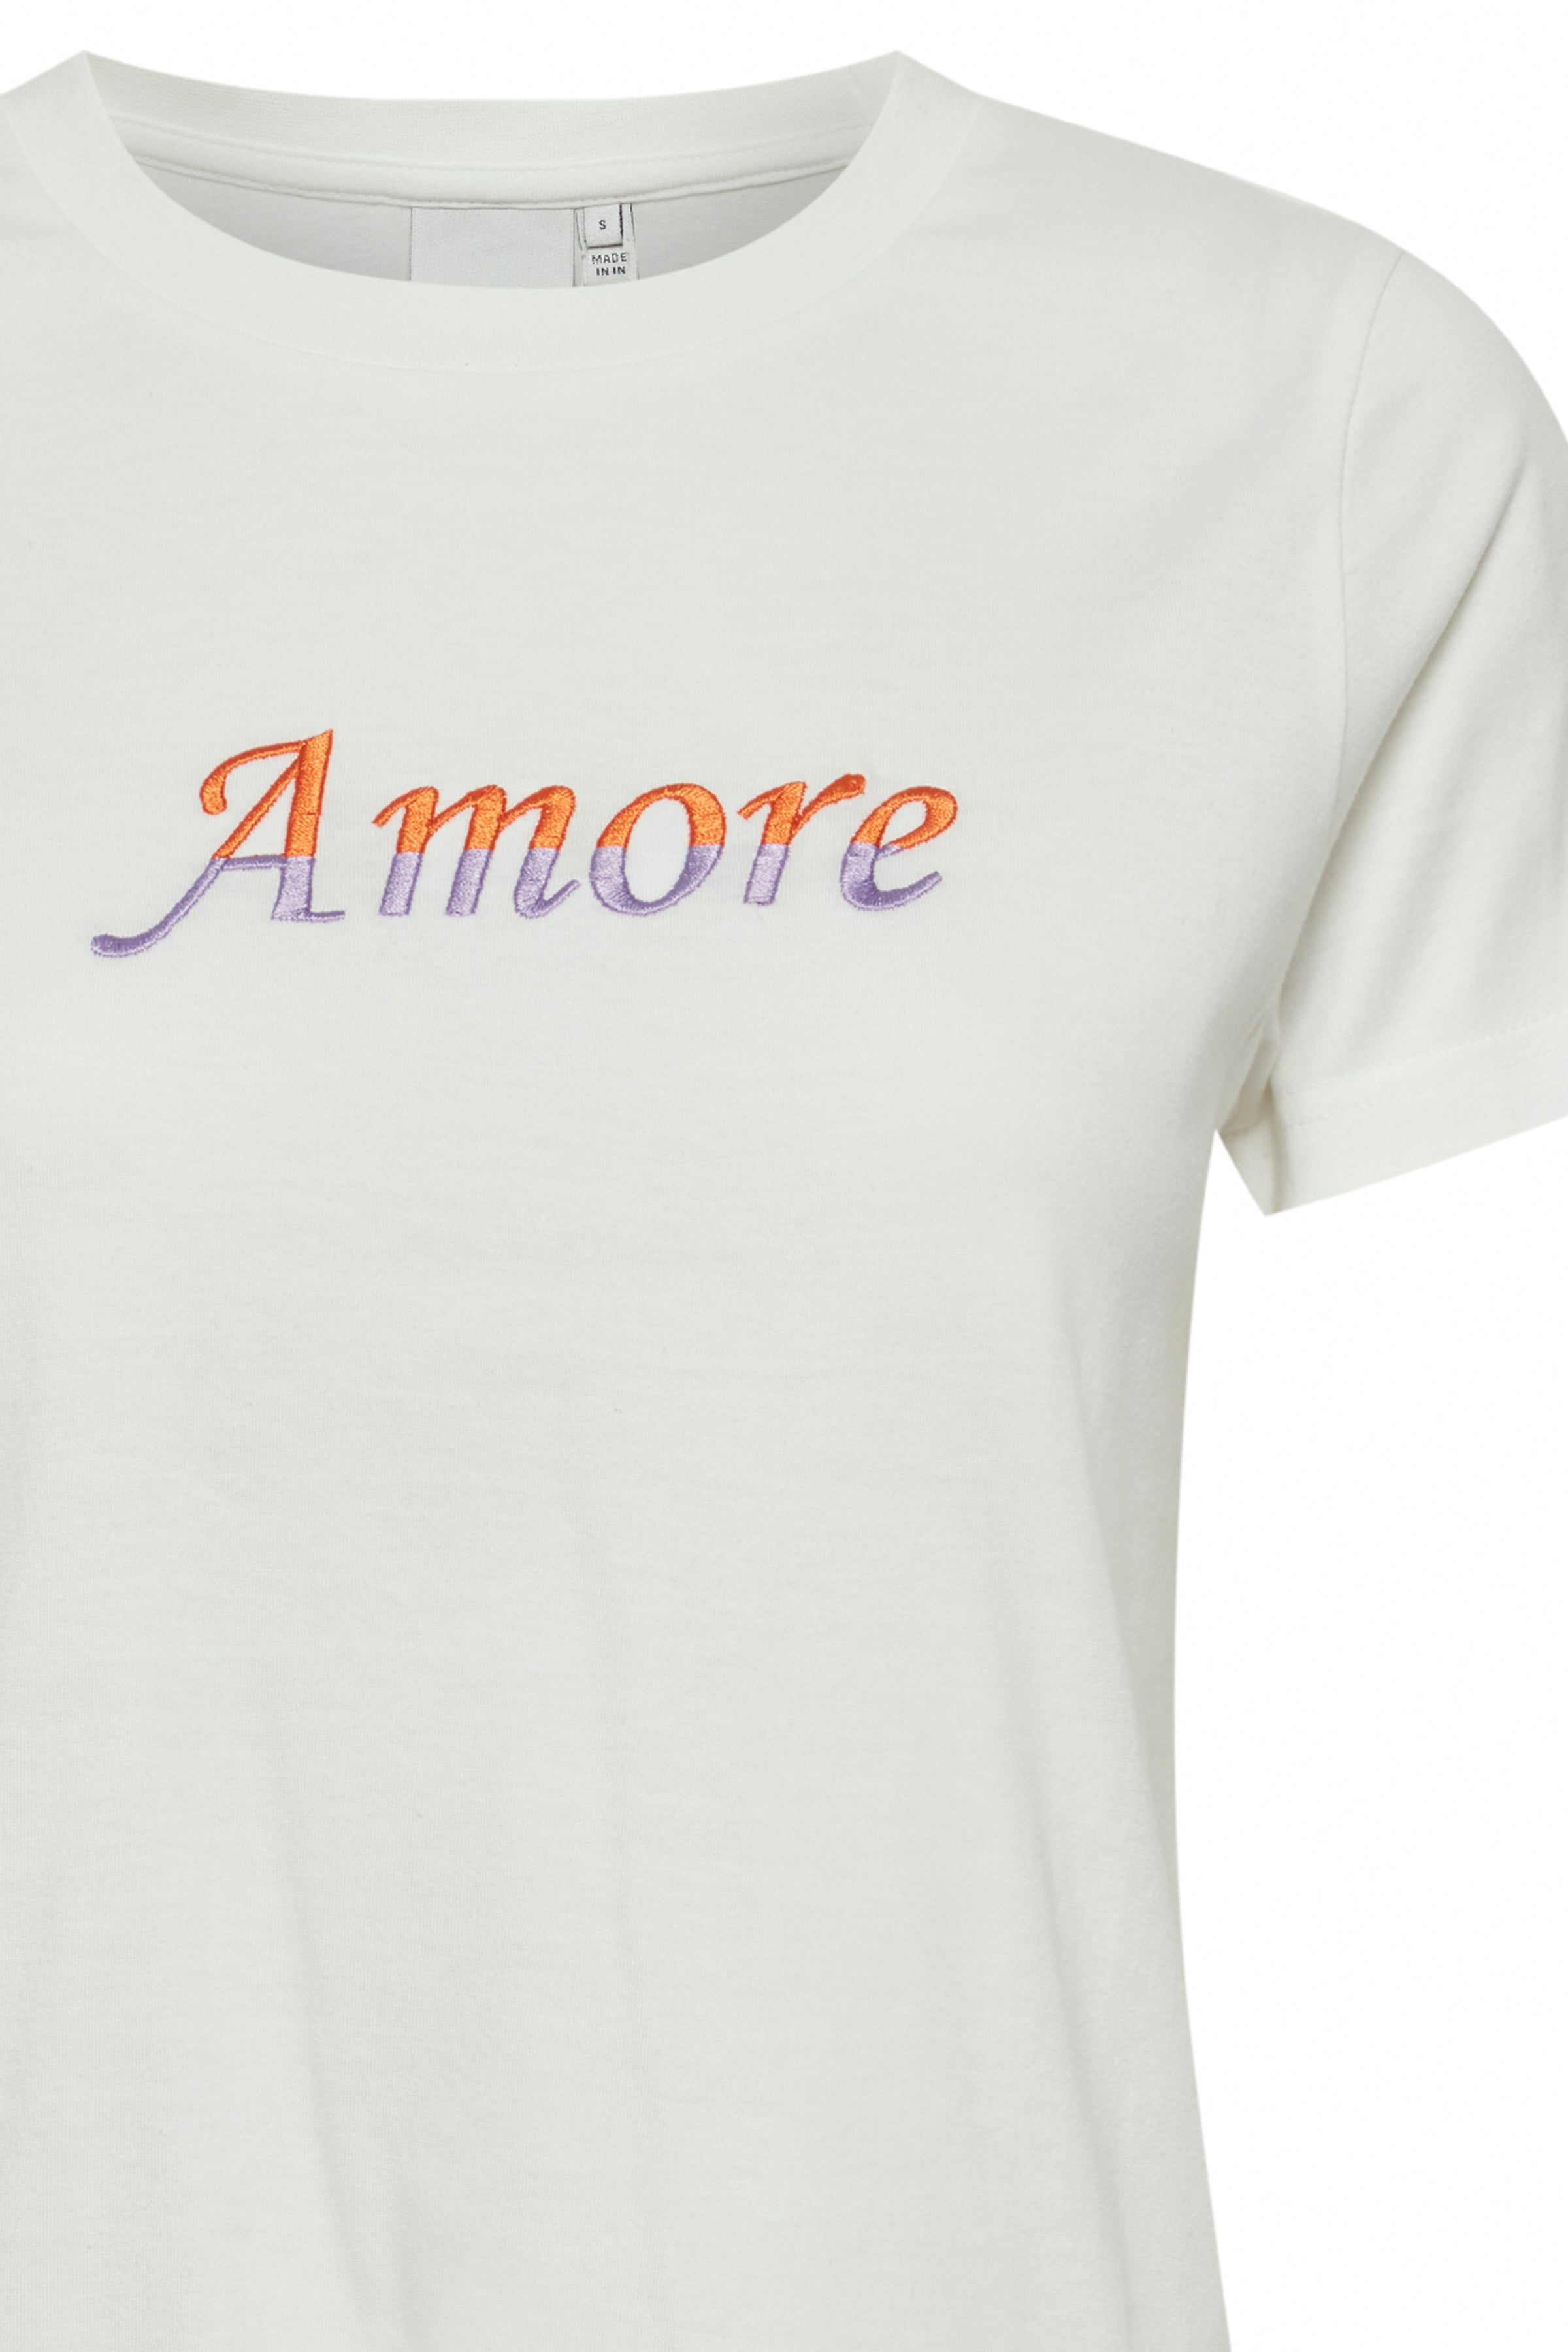 Runela T-Shirt Cloud Dancer/Amore